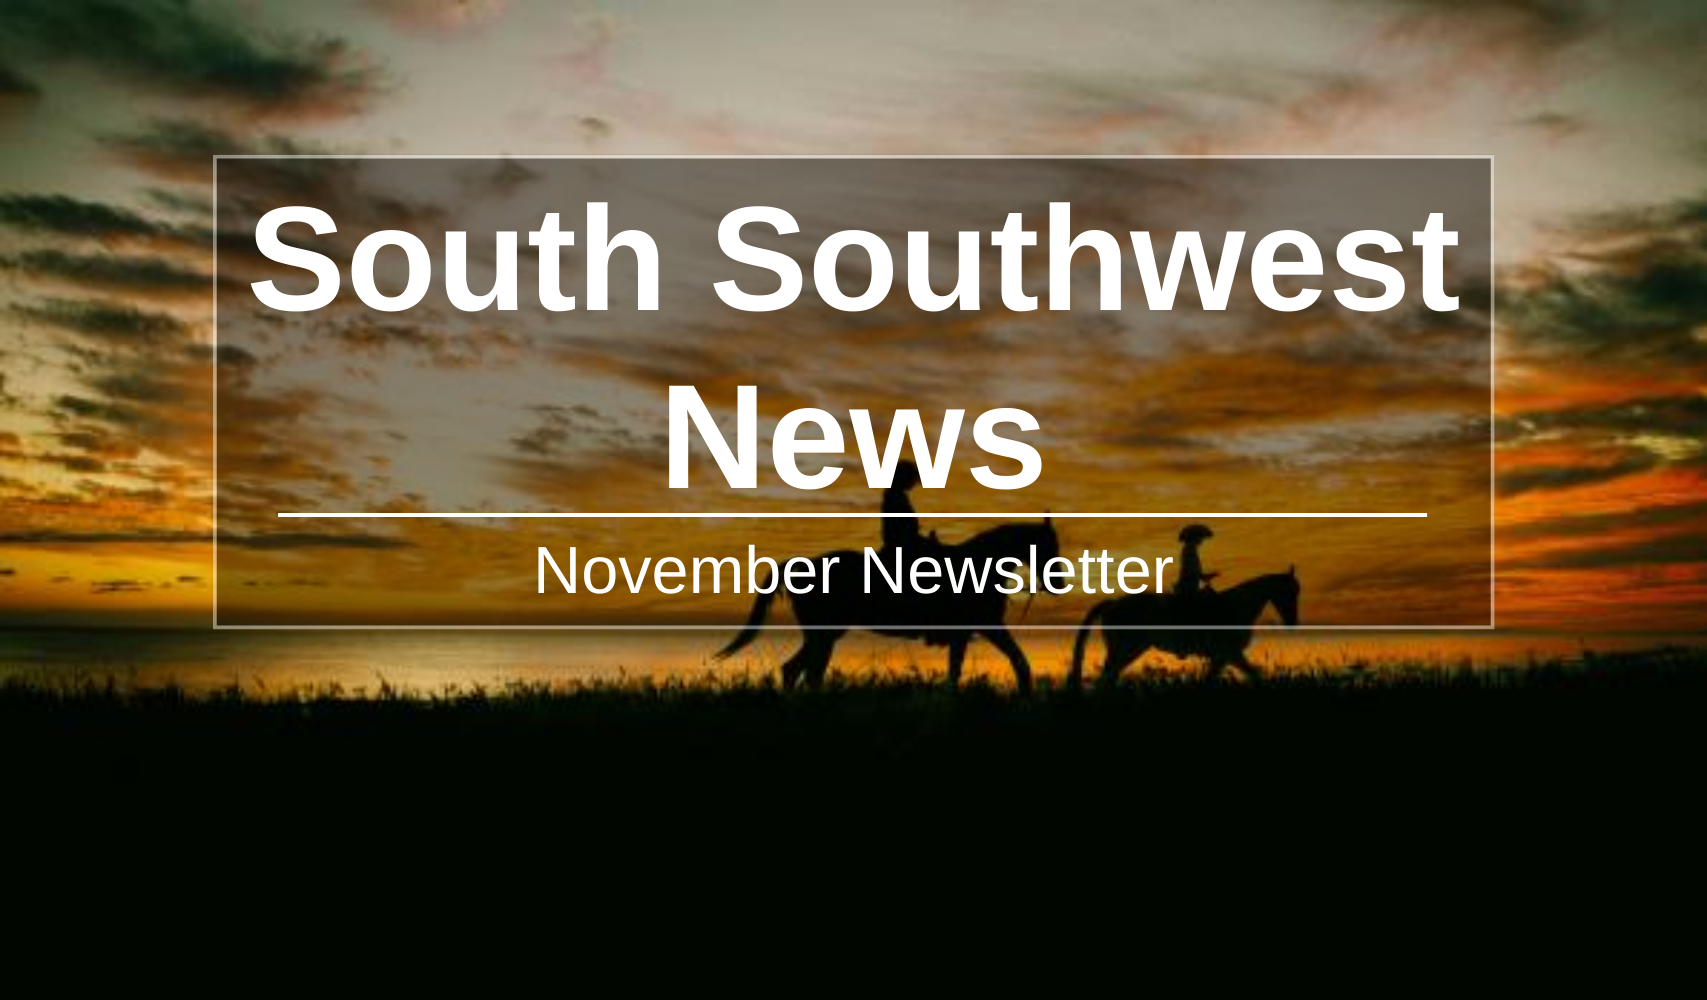 South Southwest News, November Newsletter